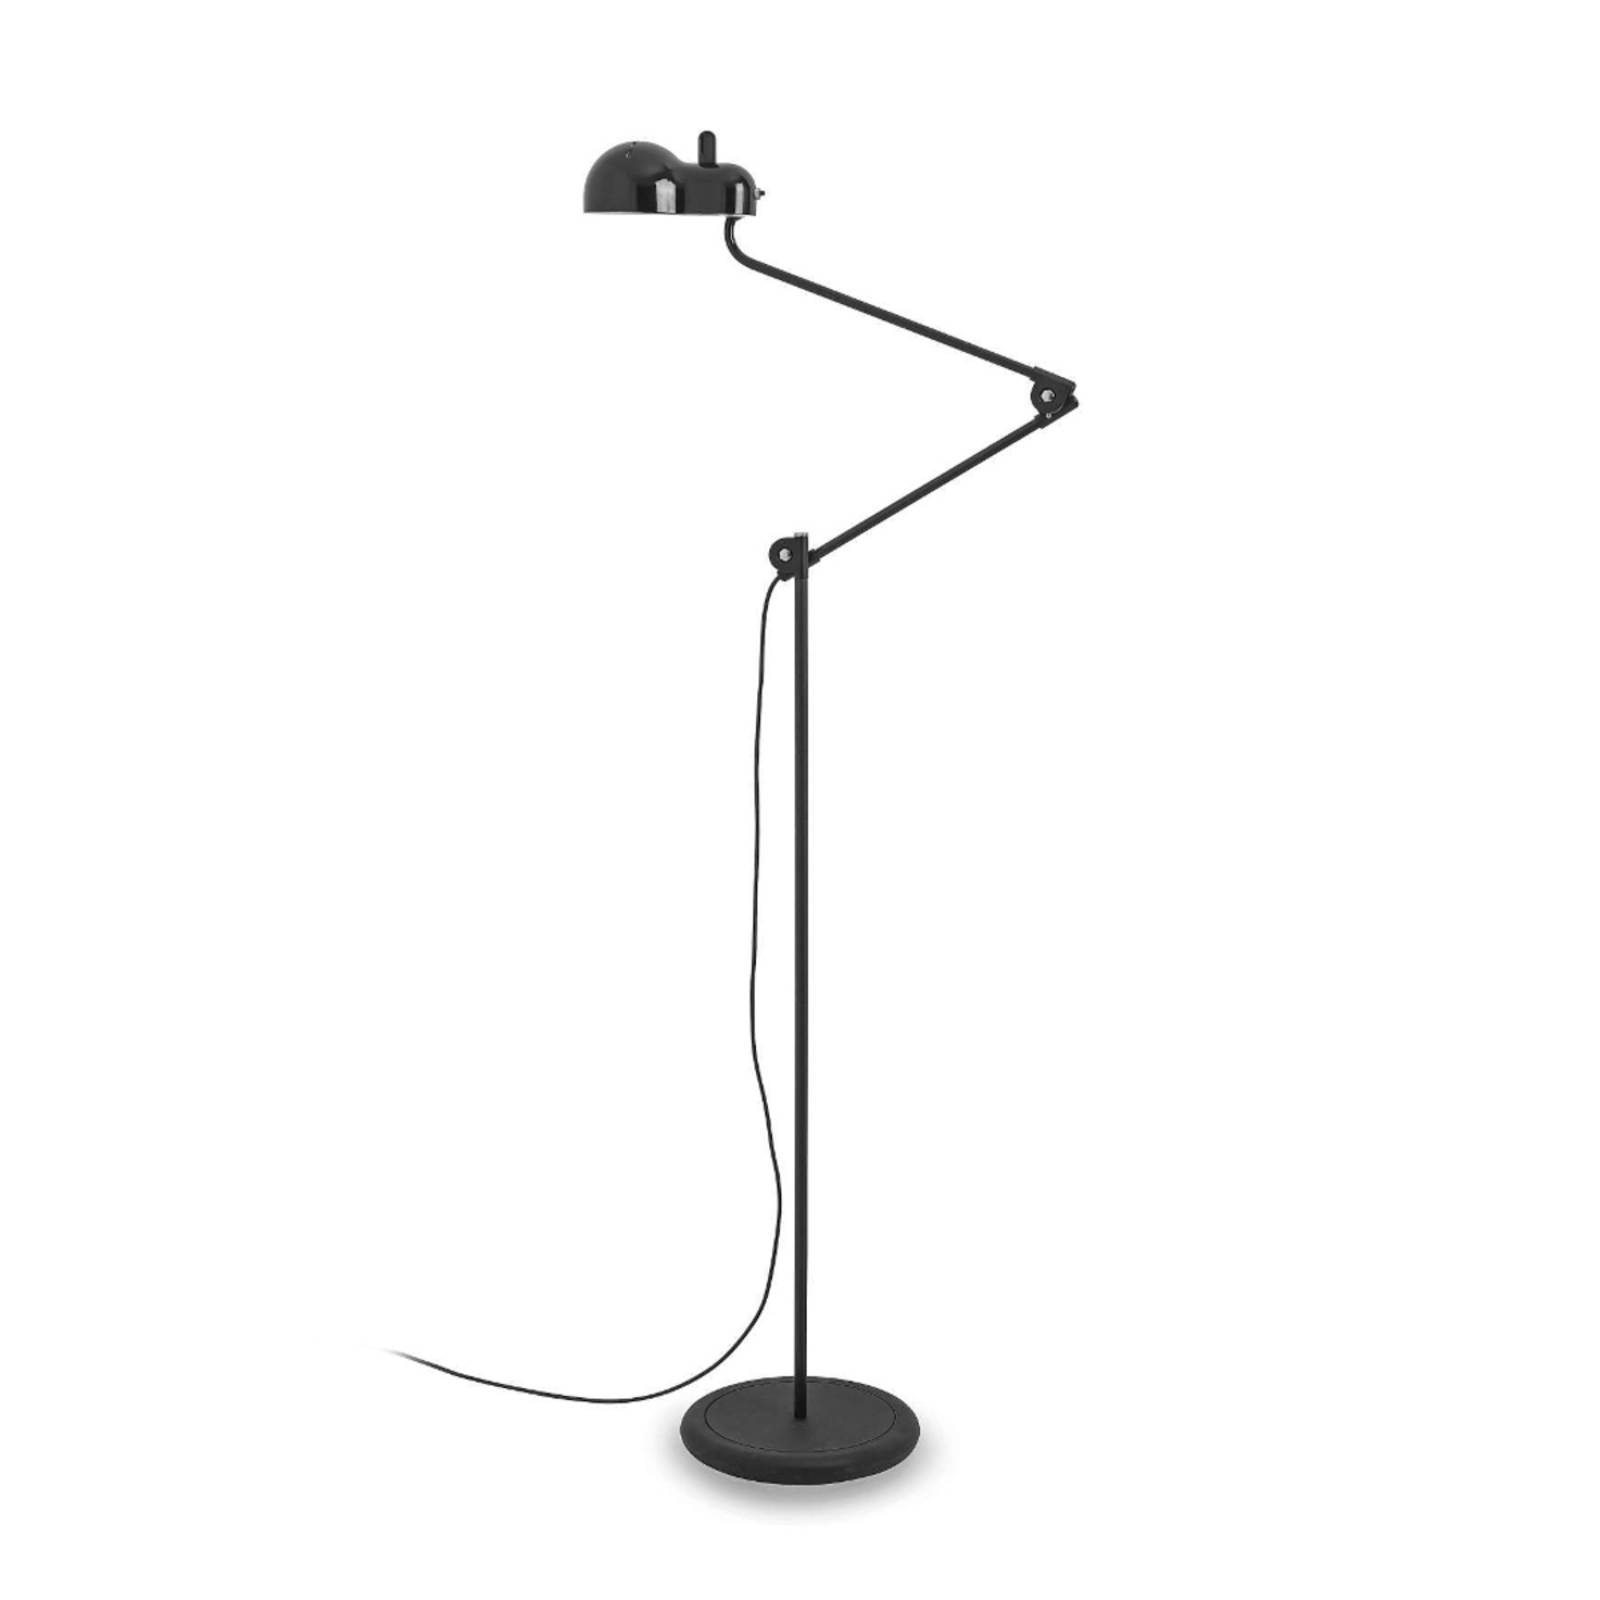 Stilnovo Topo stojacia LED lampa, čierna